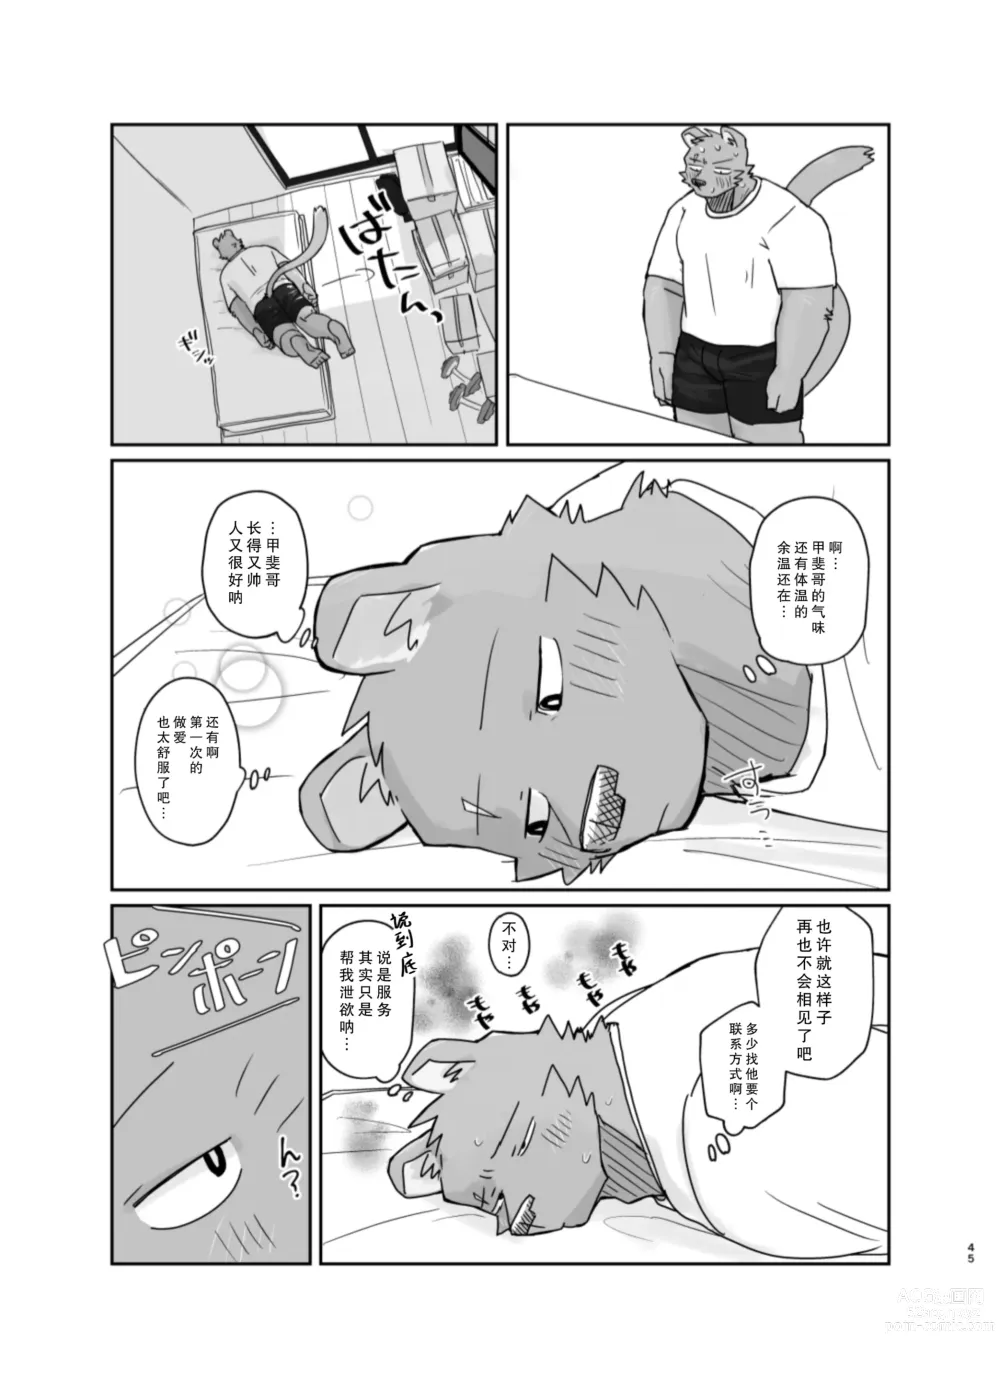 Page 45 of doujinshi 搬家的十分钟服务